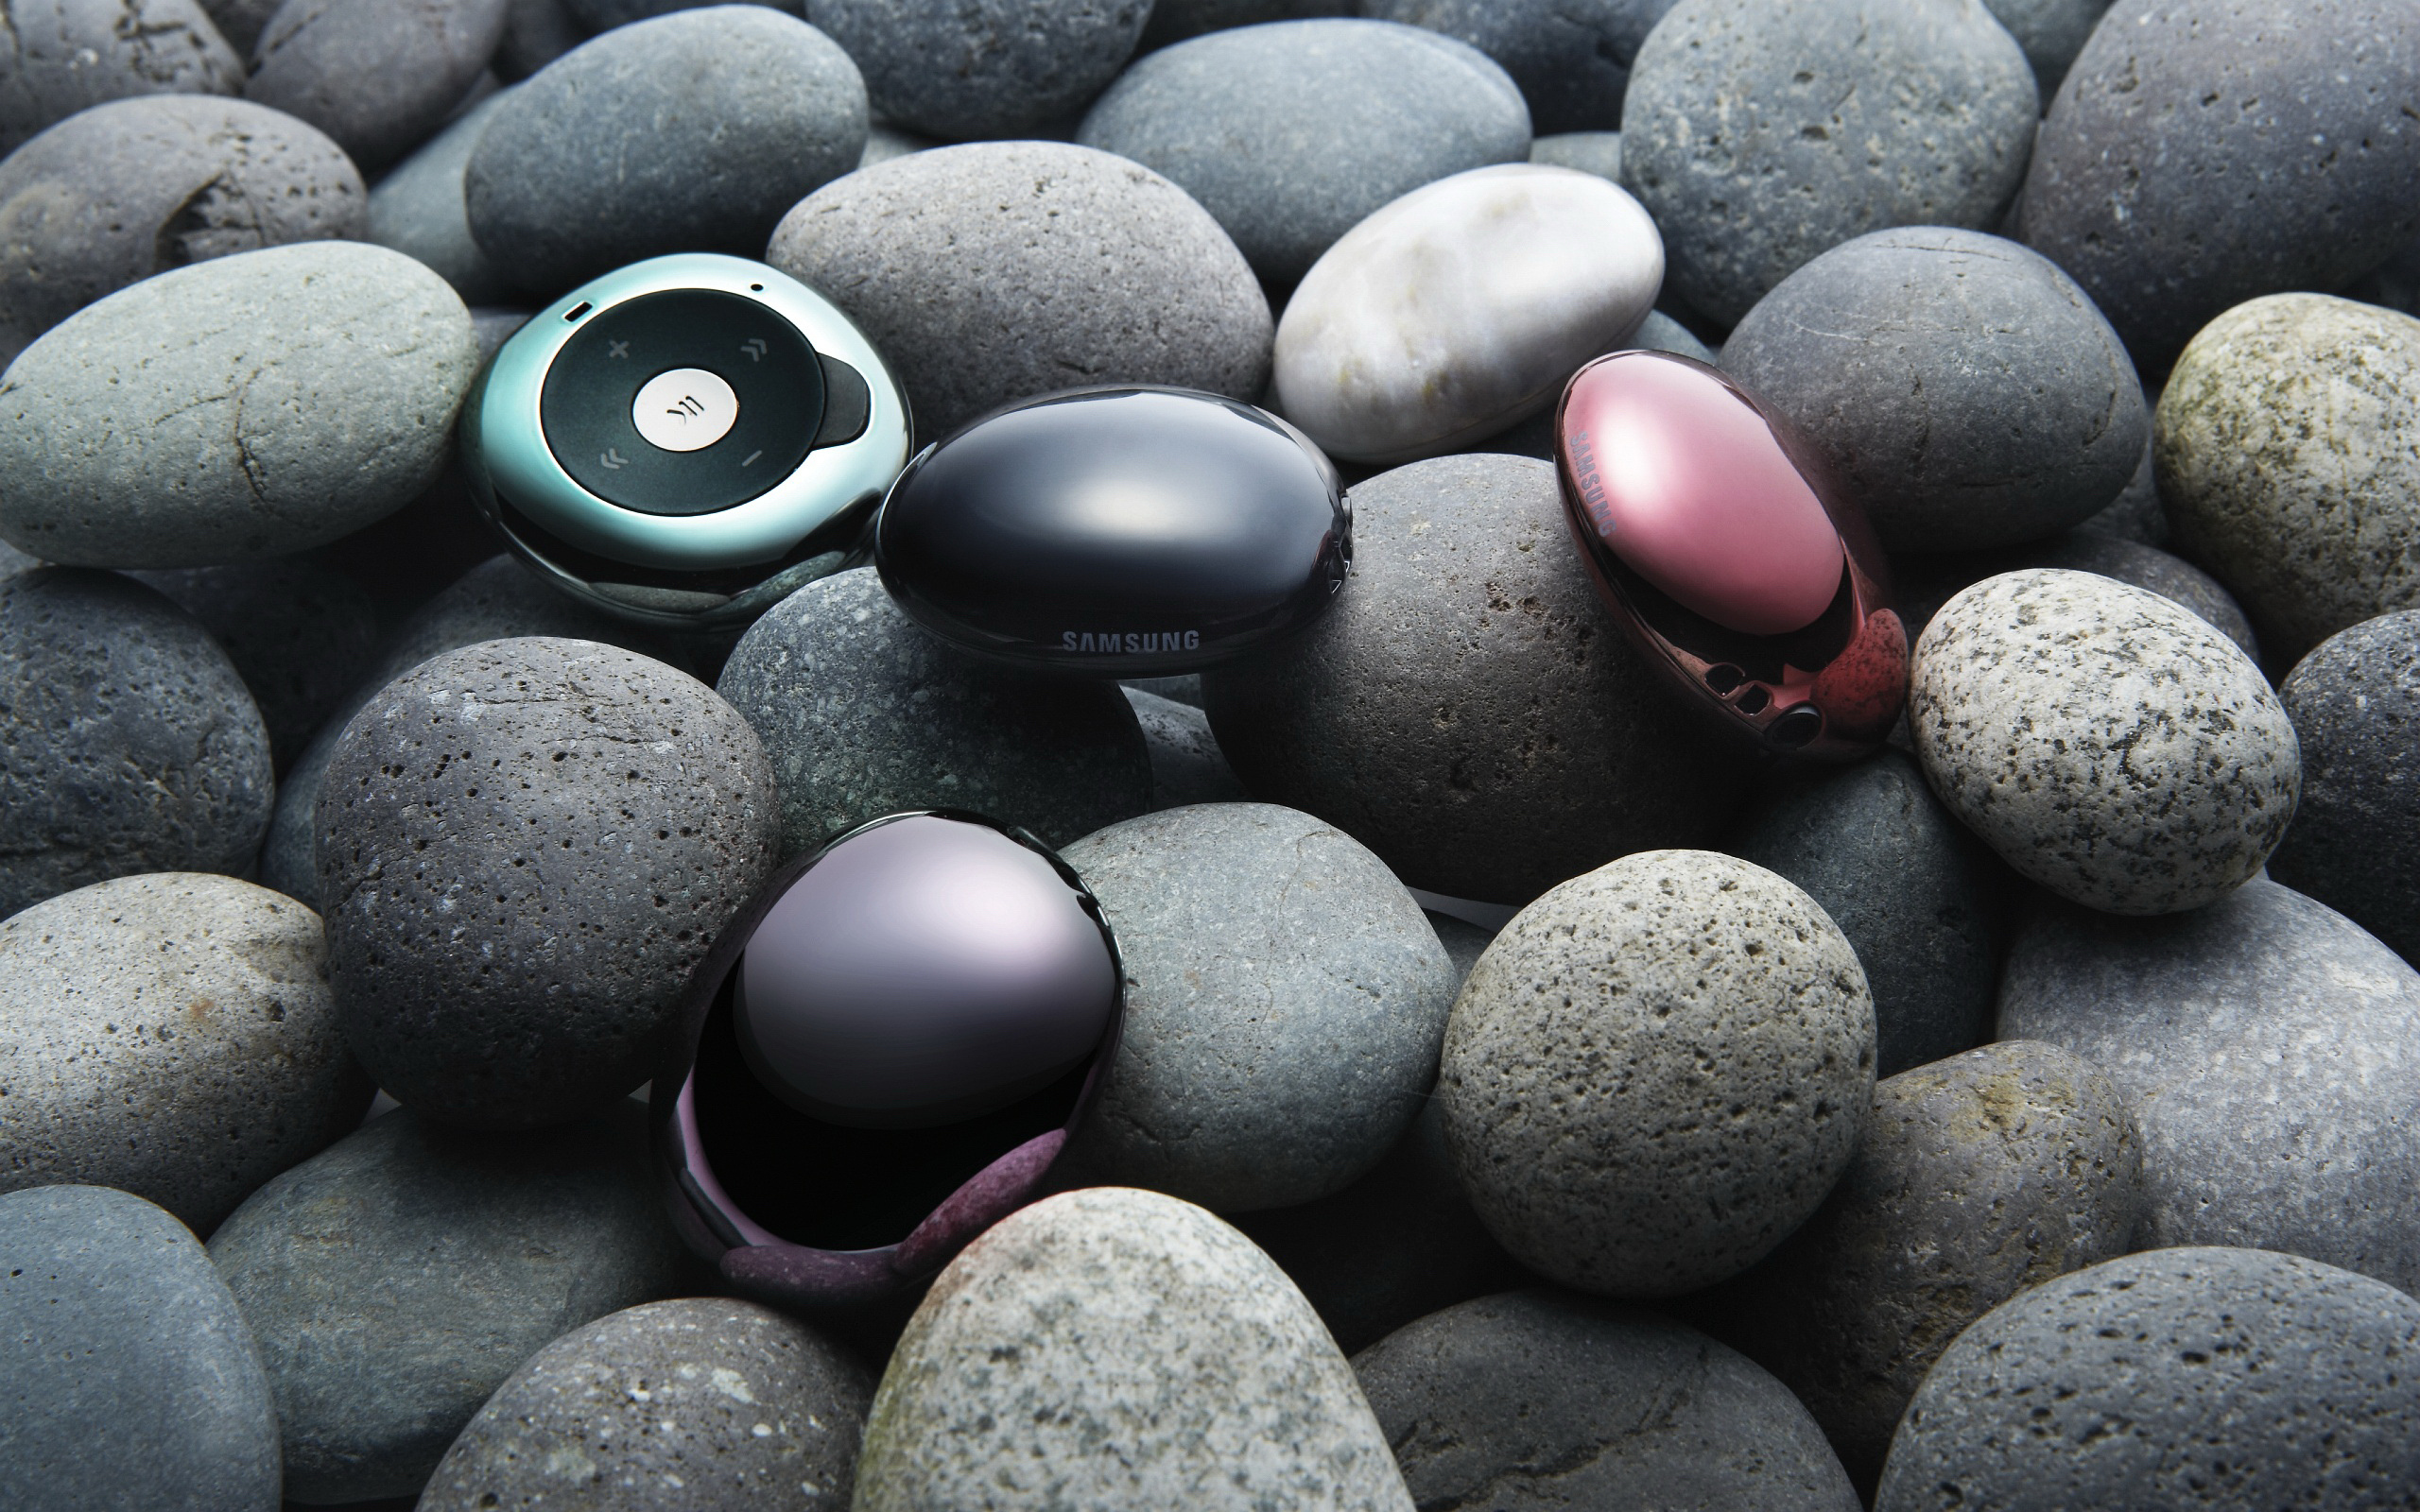 Stone телефон. Samsung YP-s2zb. Красивые камешки. Красивые камушки. Красивые гладкие камни.